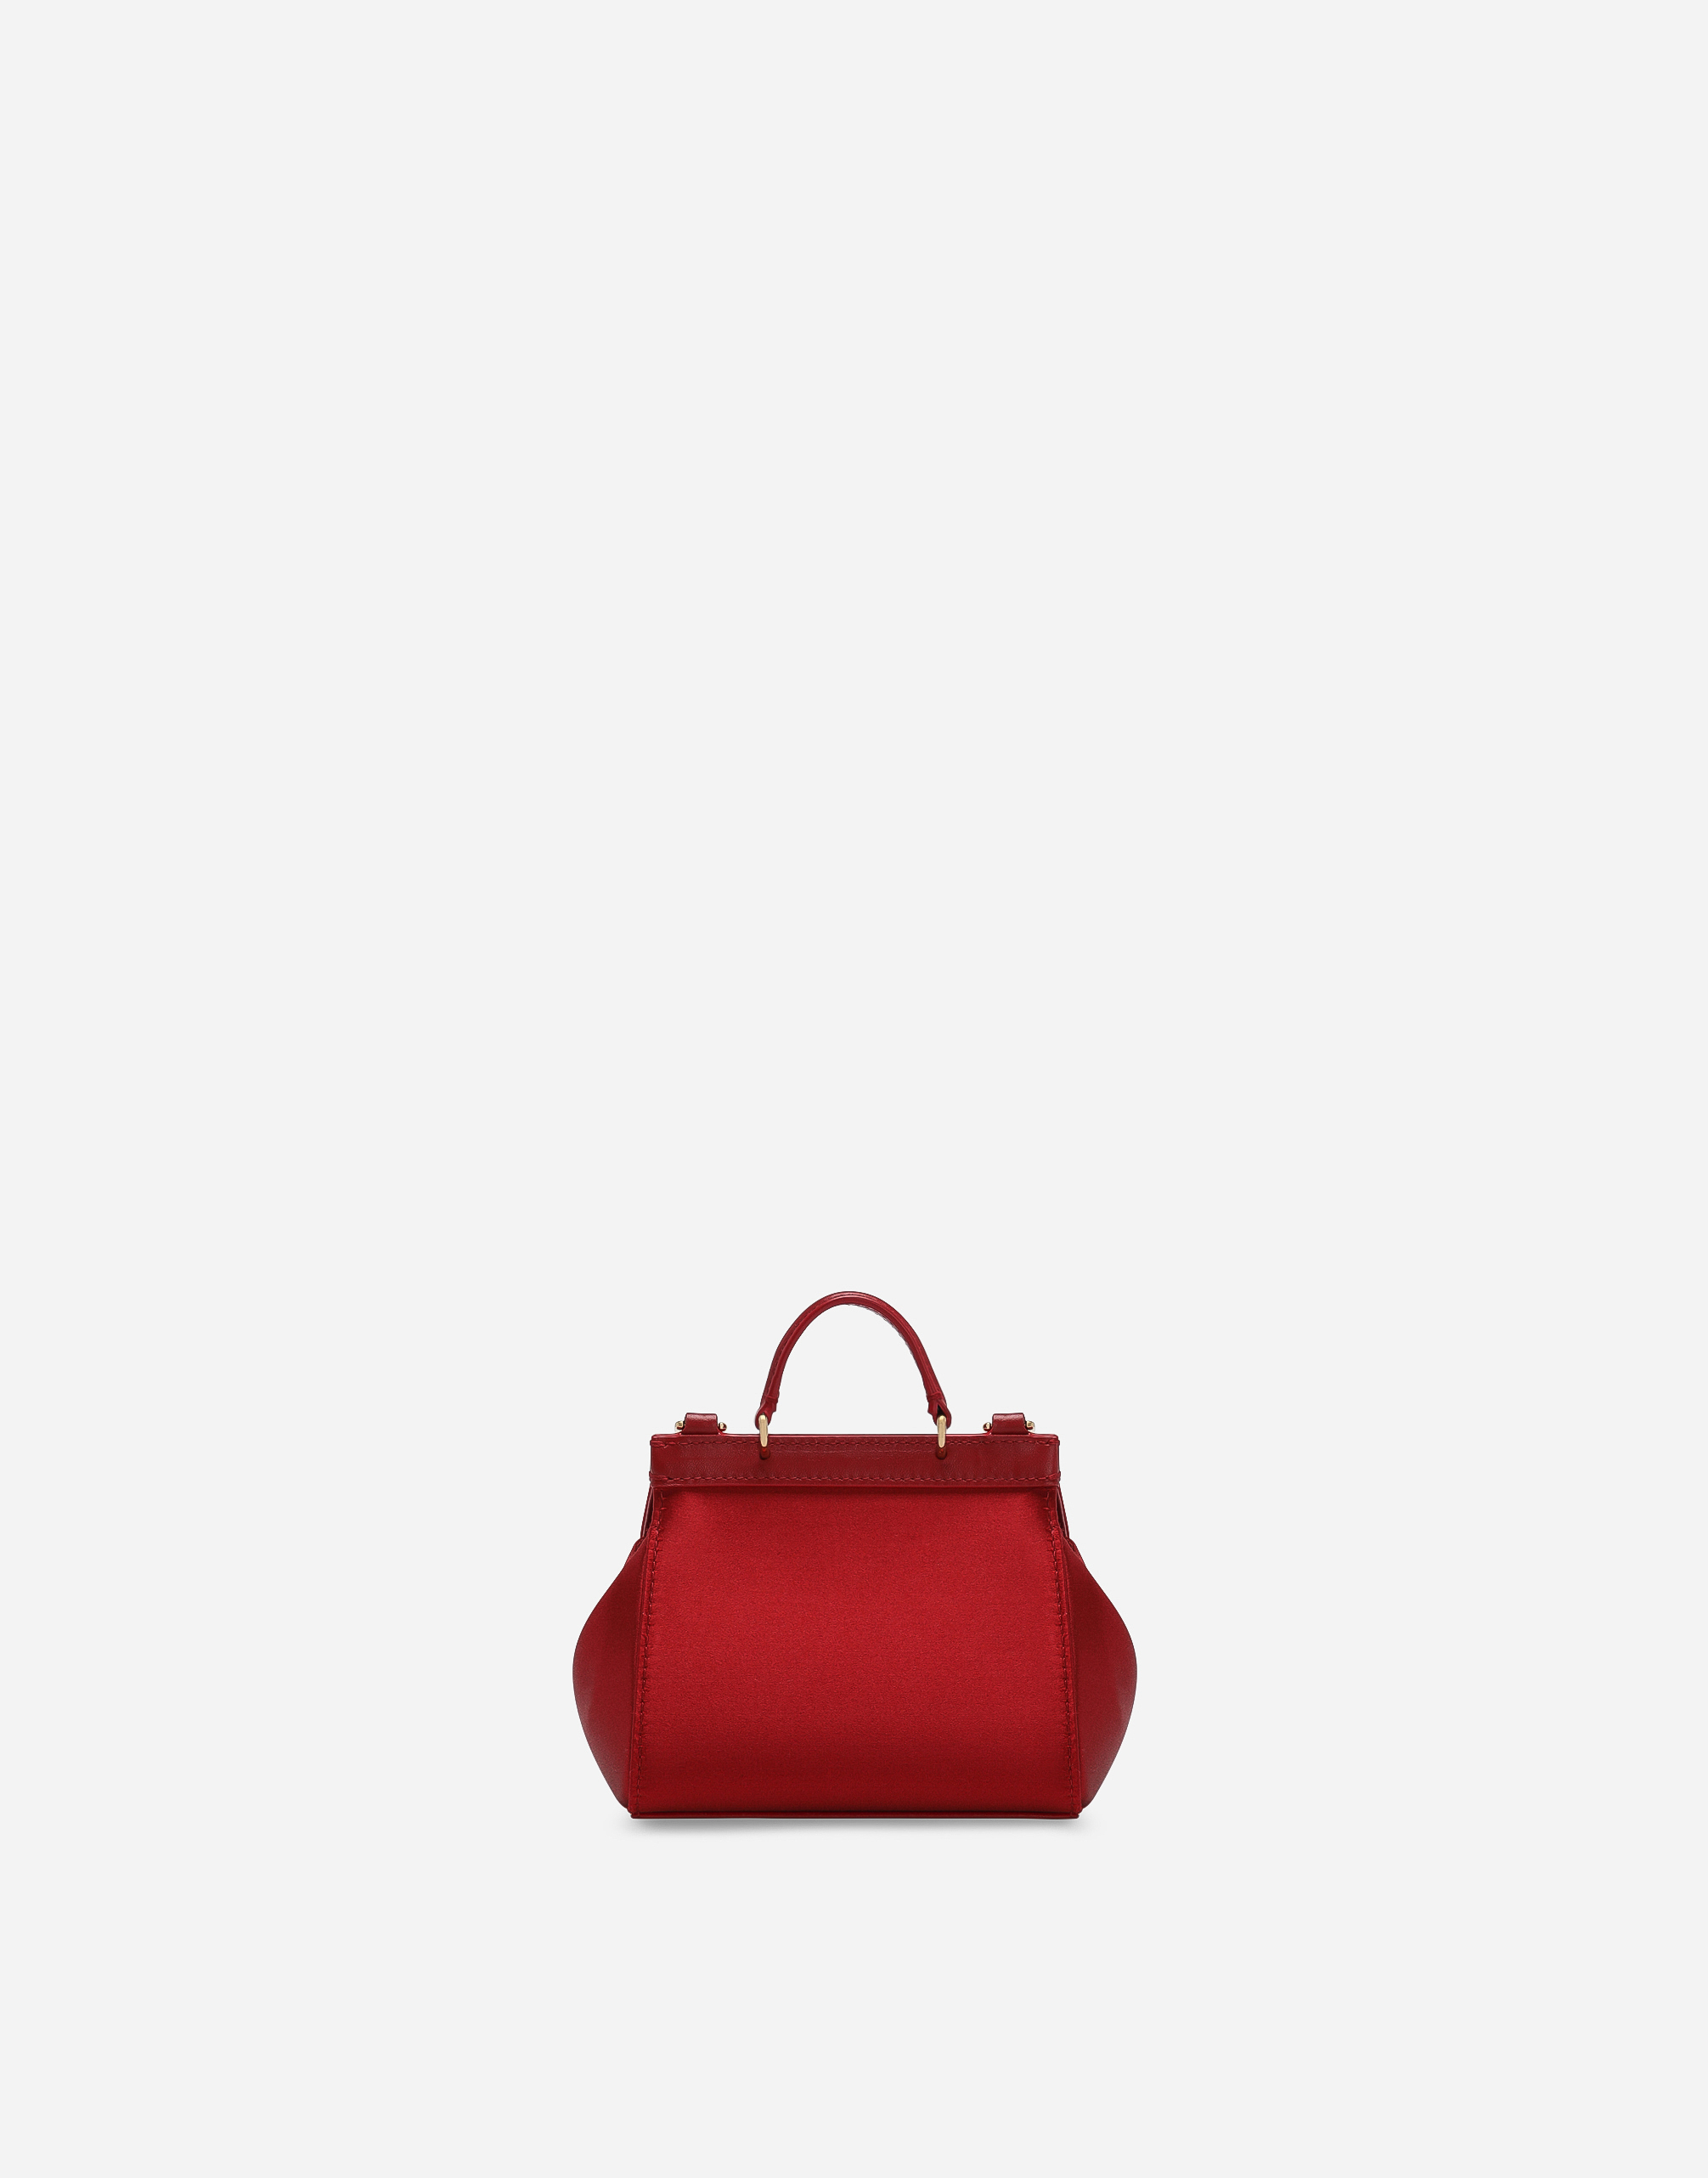 Satin mini Sicily handbag in Red for Girls | Dolce&Gabbana®